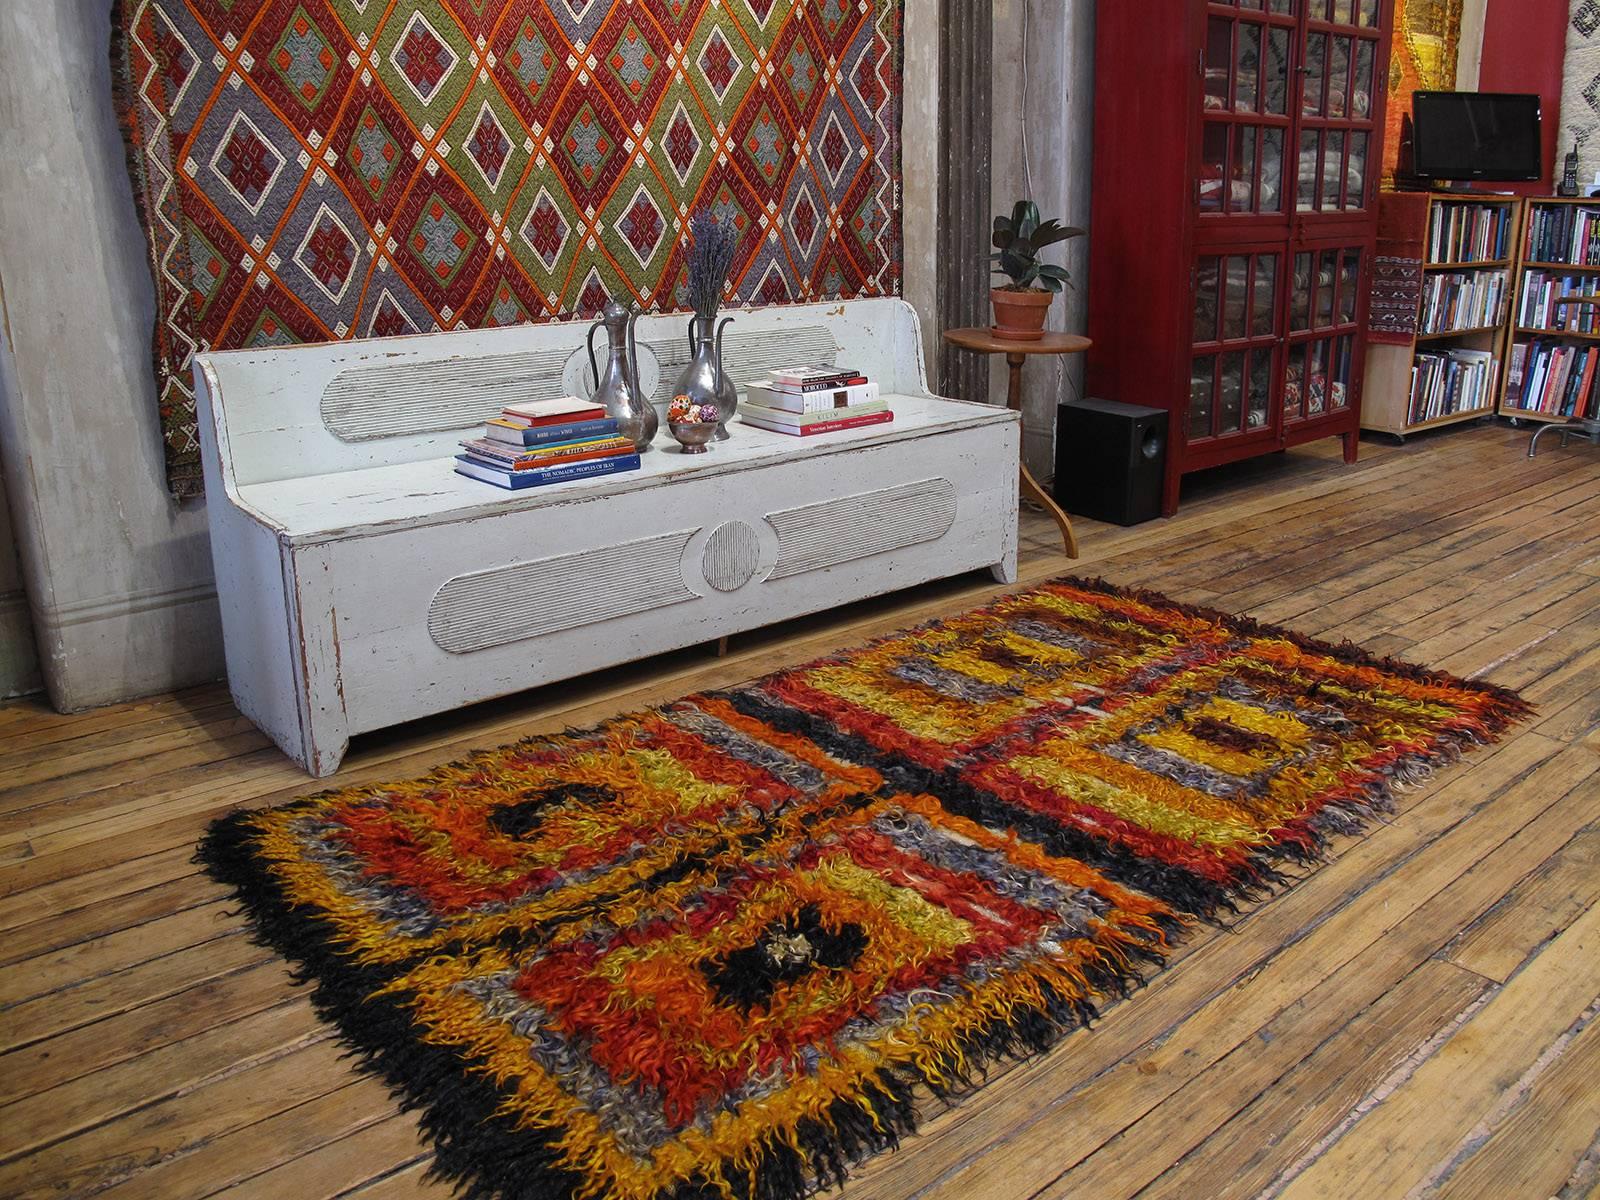 Four Squares, Angora-Tulu-Teppich. Ein alter Stammesteppich aus der westlichen Zentraltürkei, grob gewebt mit langen Strähnen aus buntem Angora-Ziegenhaar (Mohair). Solche Teppiche wurden als Betten, Decken und Wandverkleidungen verwendet, um in den